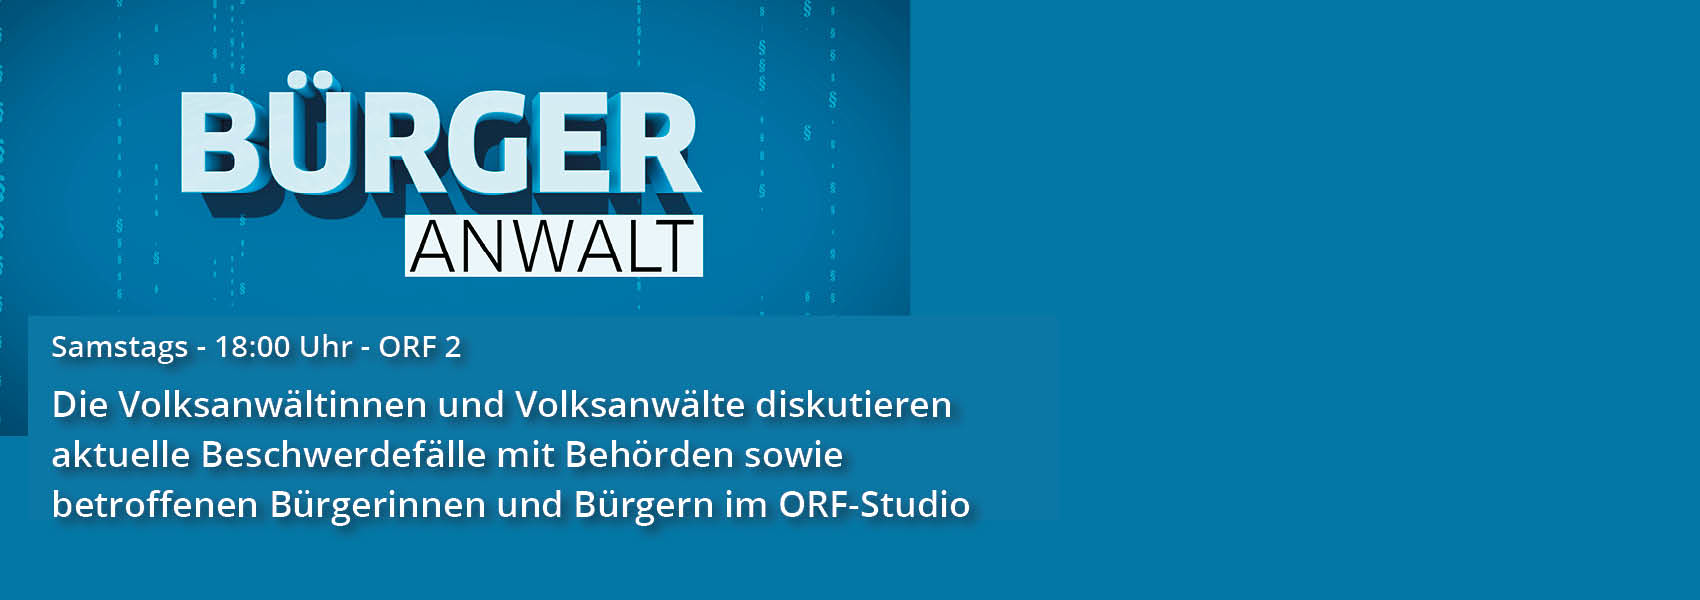 Bürgeranwalt - Samstags 18:00 Uhr - ORF 2